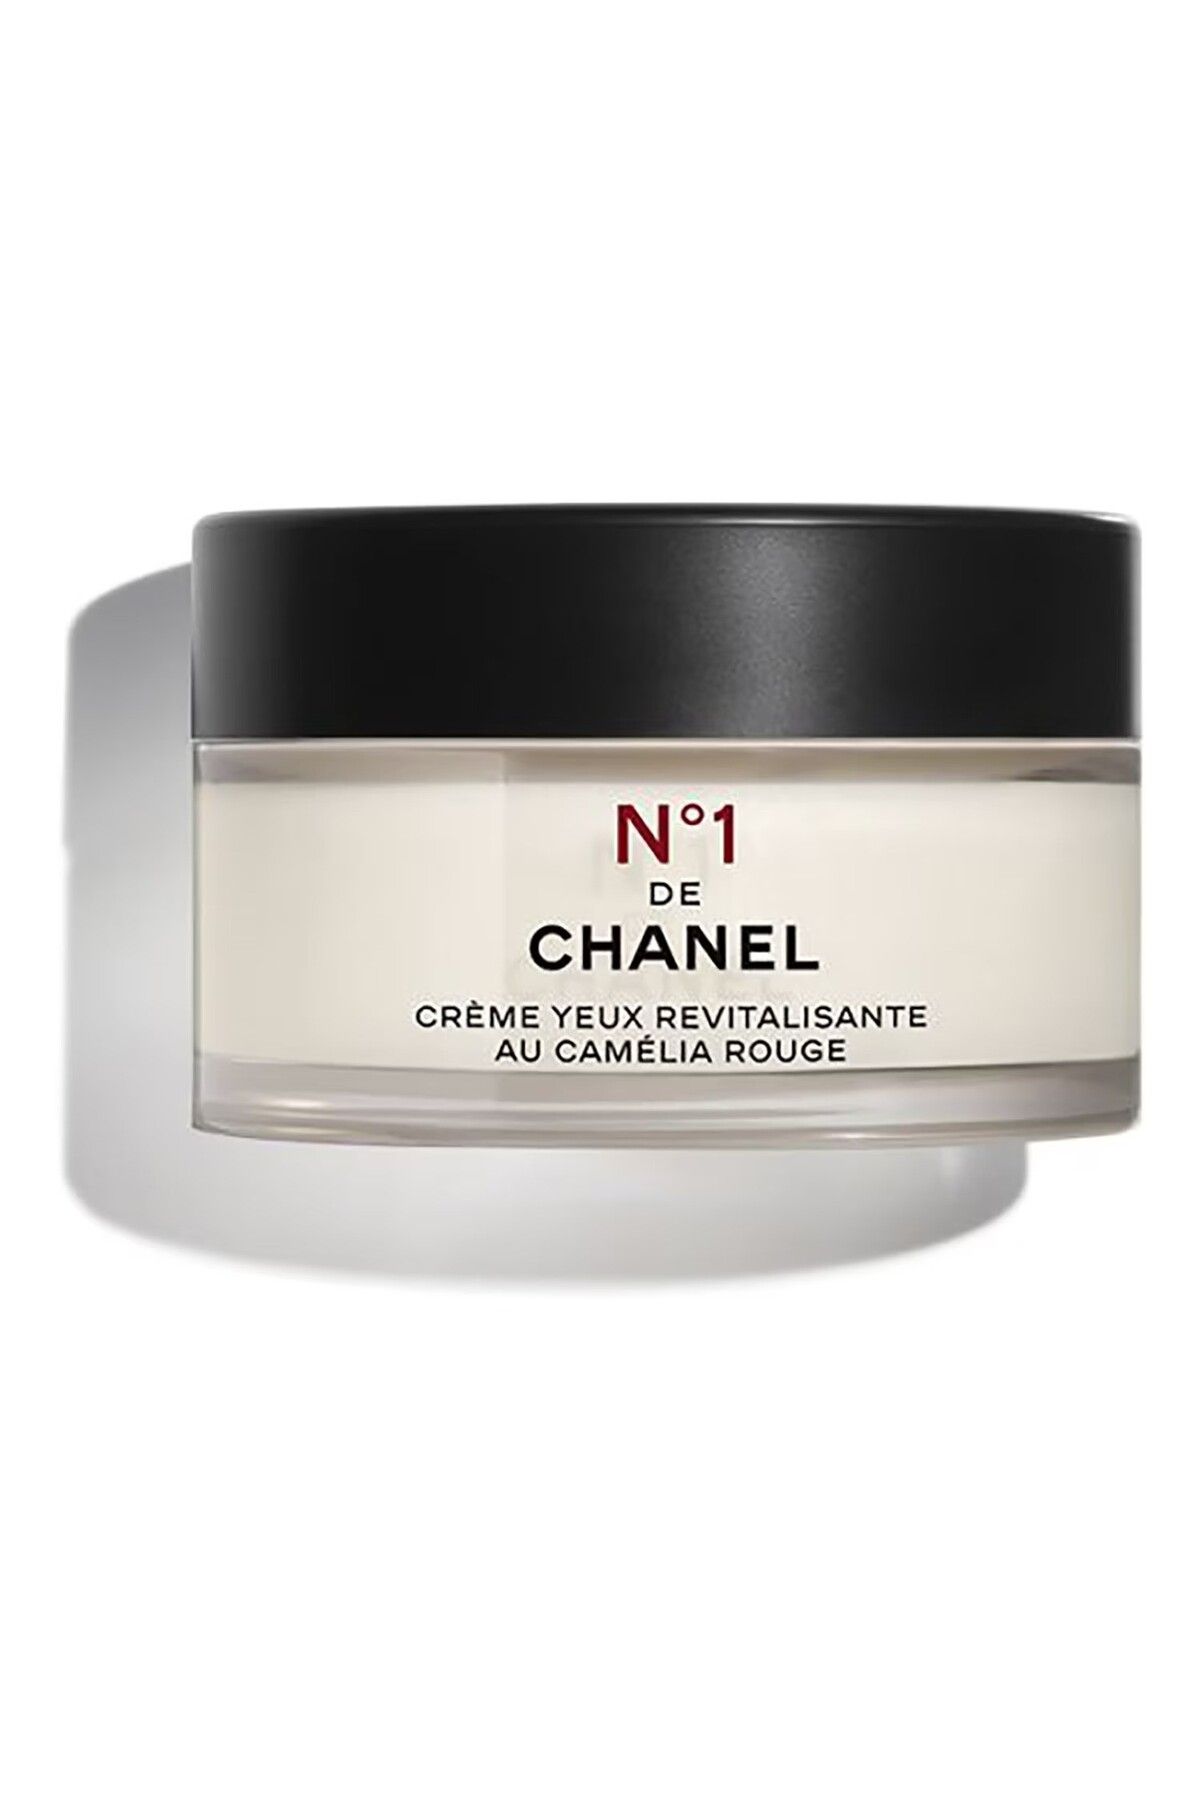 Chanel N°1 DE CHANEL - Göz Altı Şişliklerini Ve Morluklarını Yok Eden Canlandırıcı Göz Kremi 15 gr